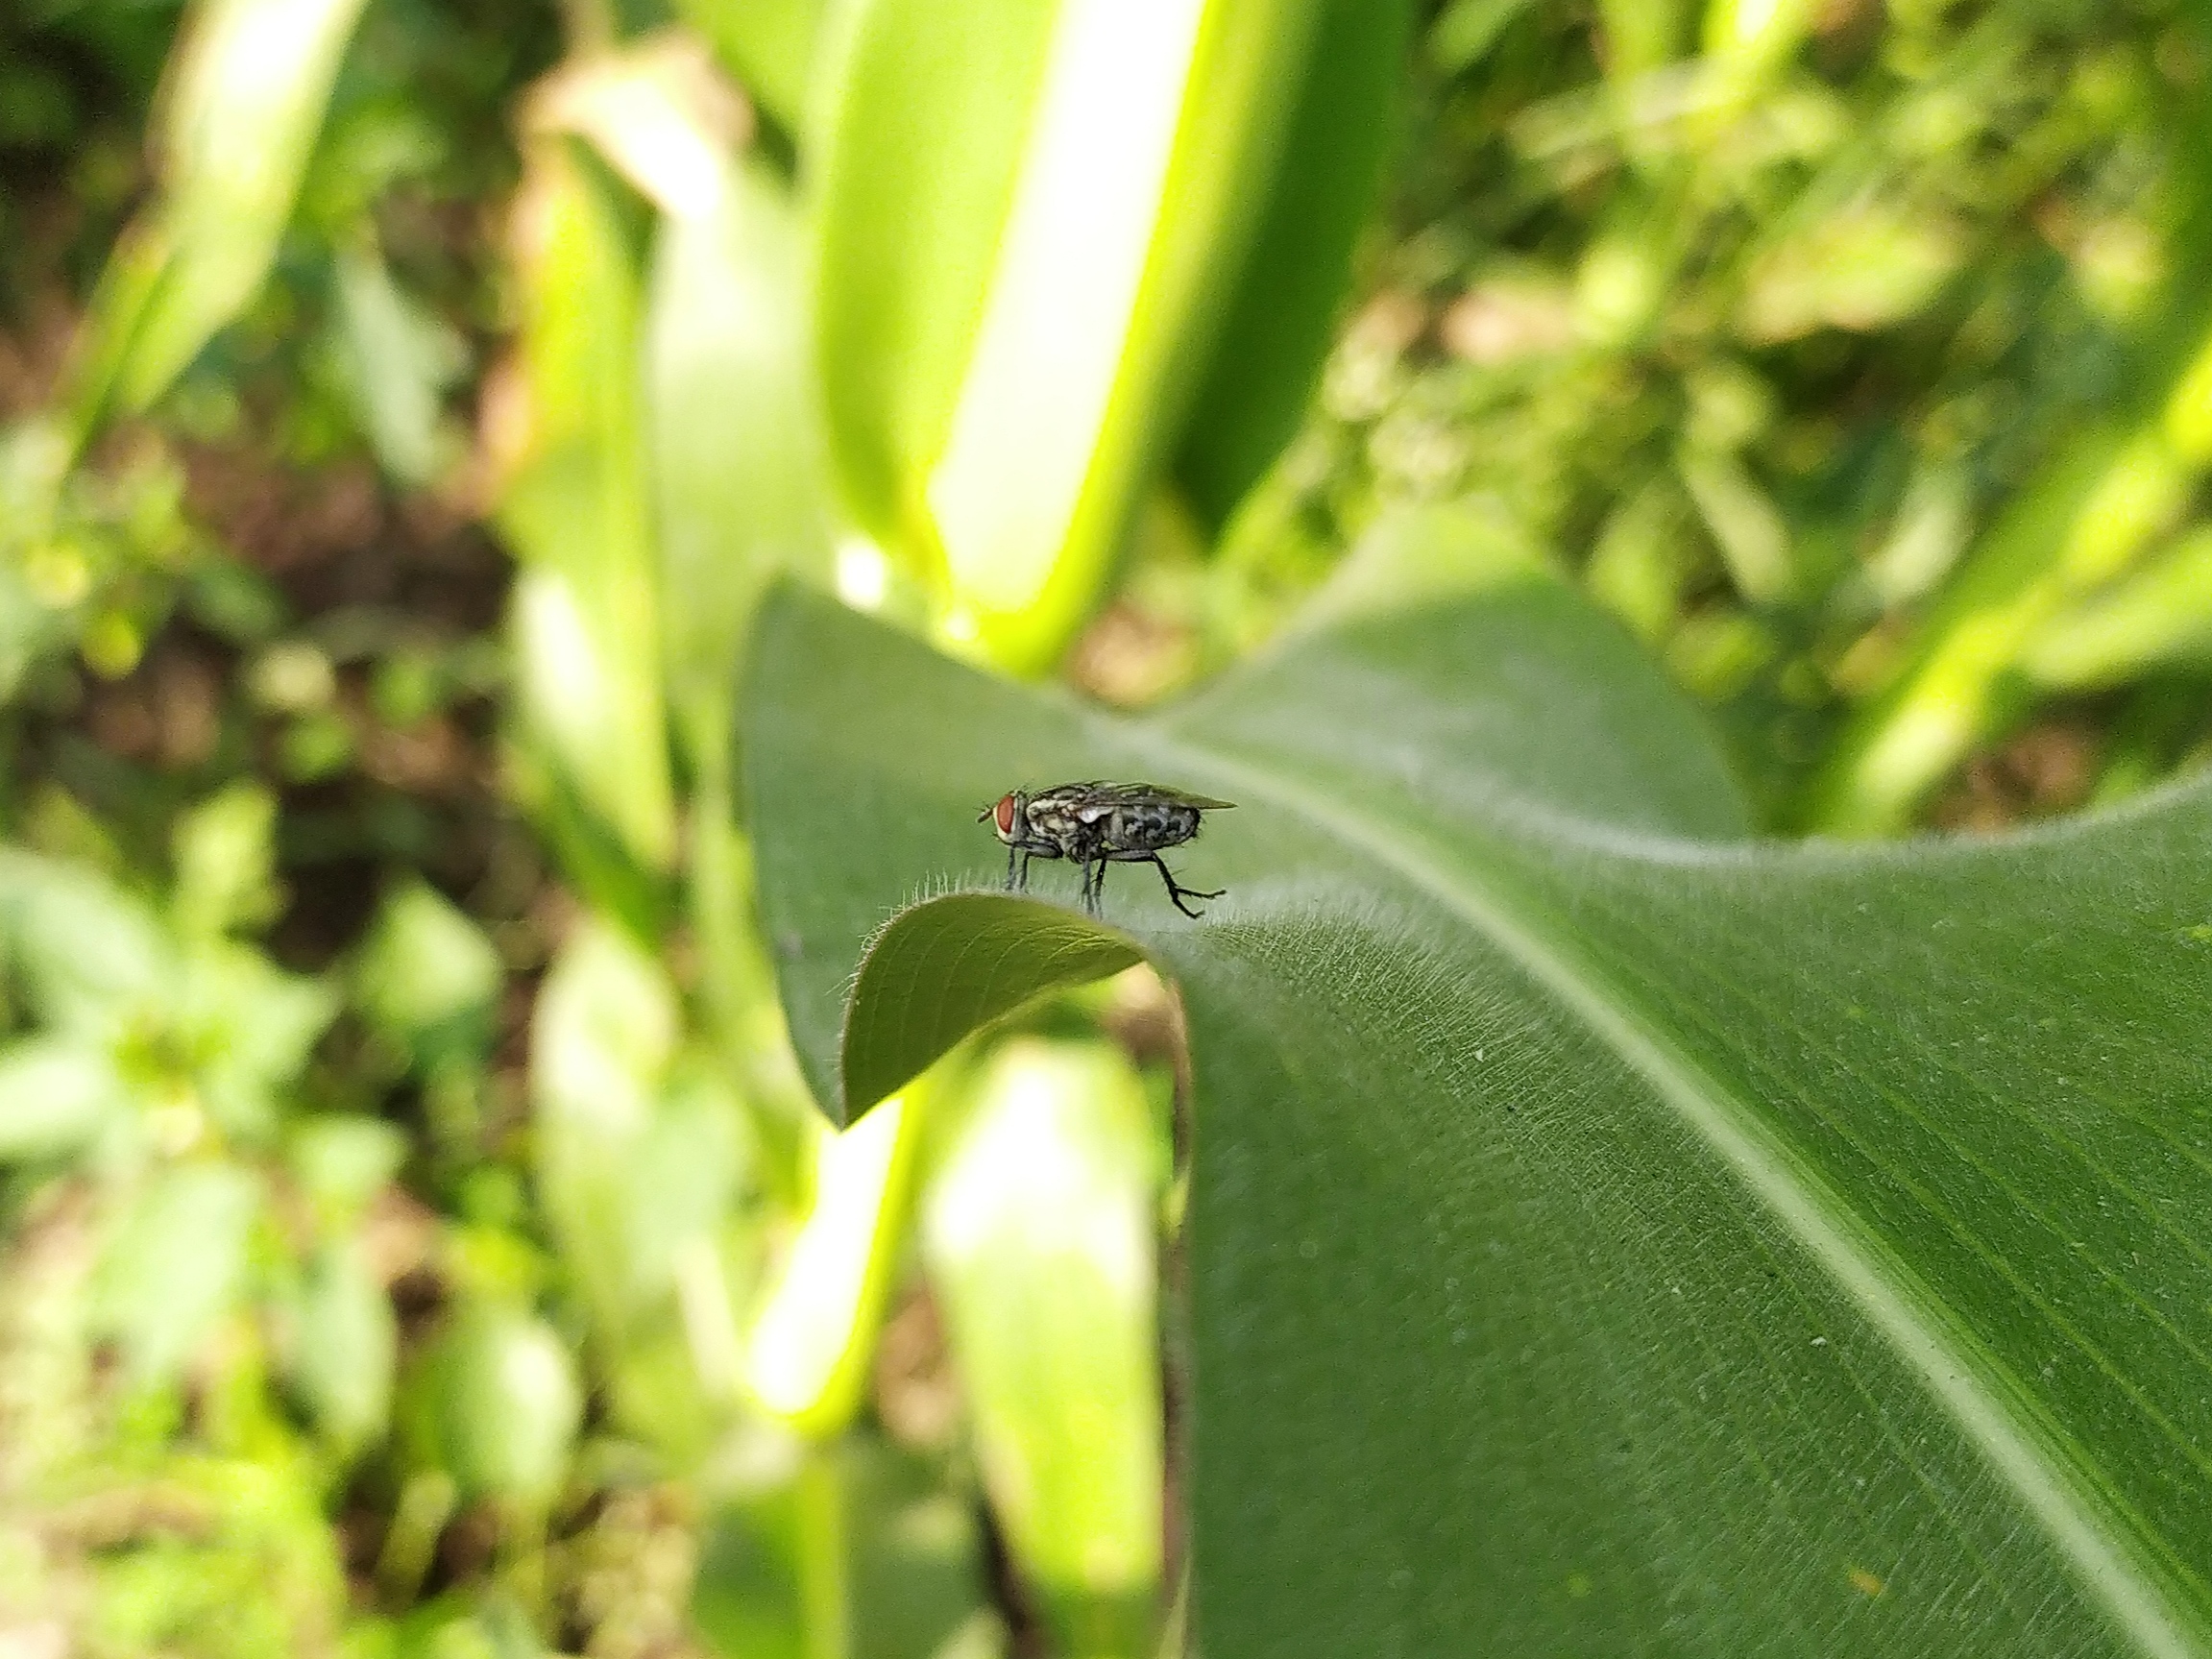 A housefly on a leaf